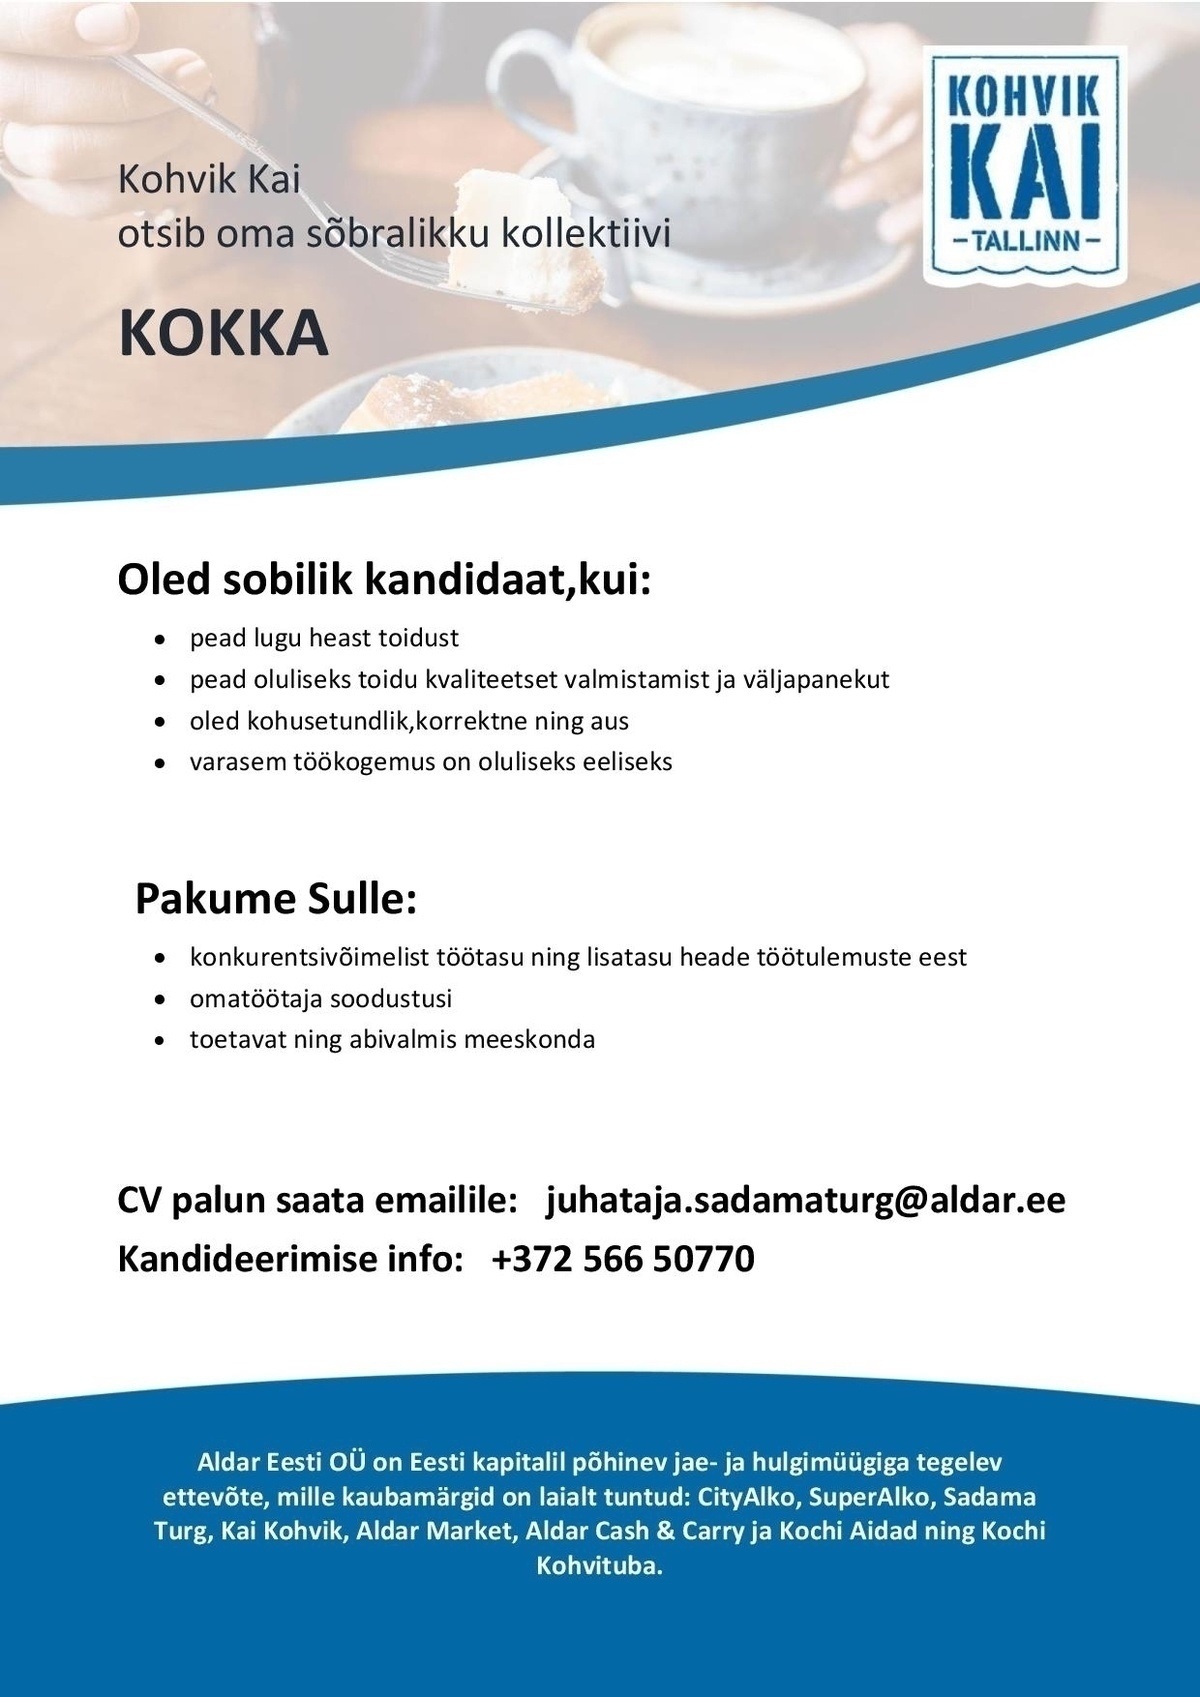 OÜ Aldar Eesti Kokk  Kai Kohvikus